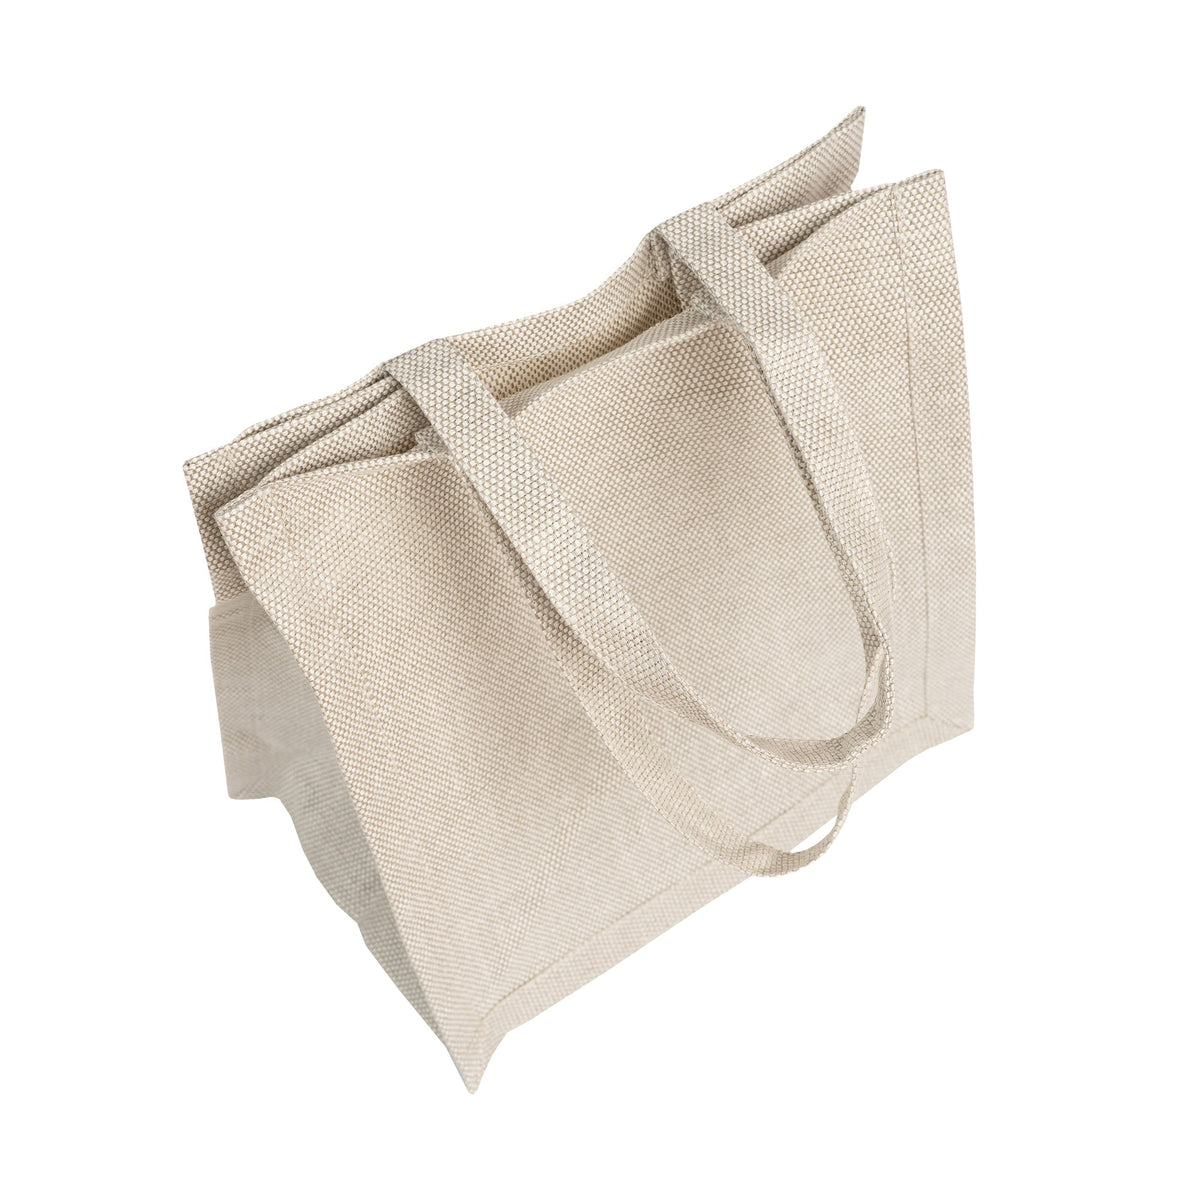 MENIQUE Rigid 100% Linen Tote Bag